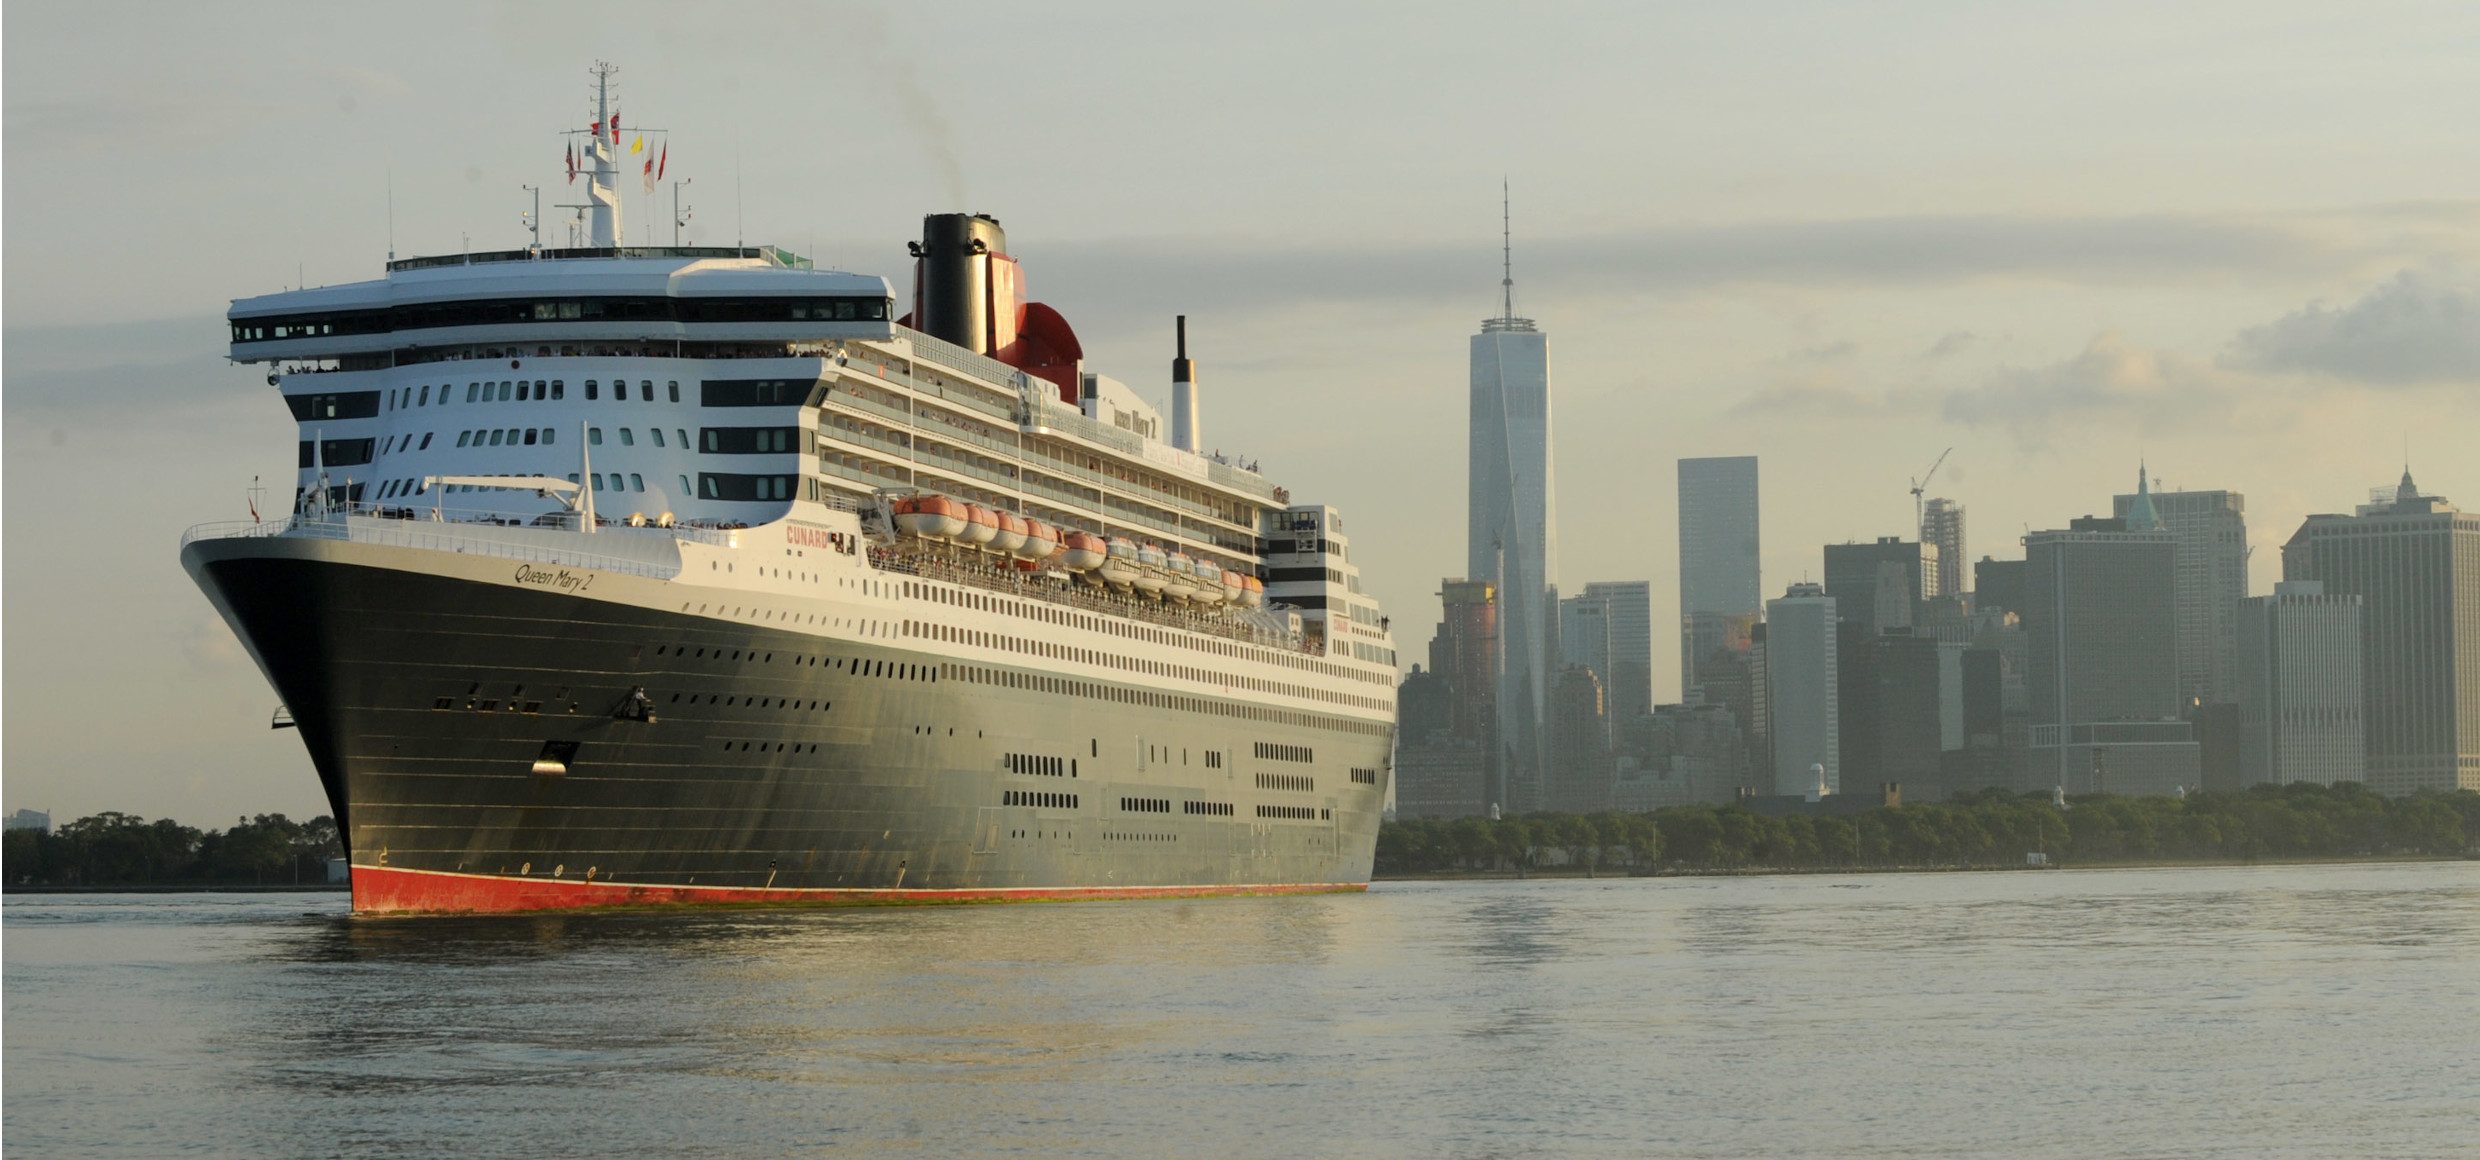 Queen-Mary2-Cunard-Kanada